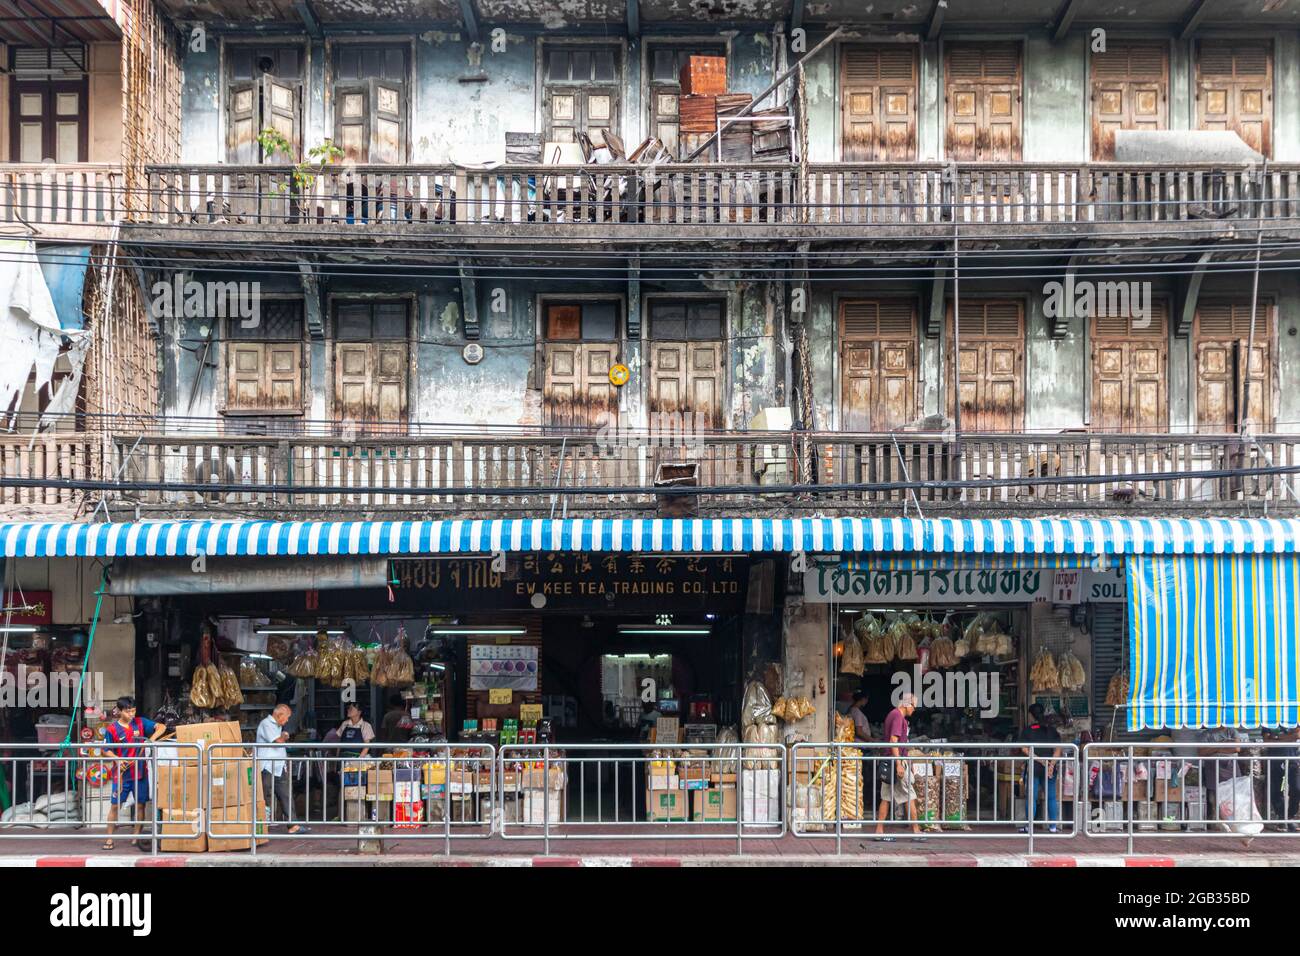 Bangkok, Thailand - 24. Oktober 2019: Ein typisches Gebäude in Chinatown mit Geschäften im Erdgeschoss und Wohnzimmern darüber. Stockfoto